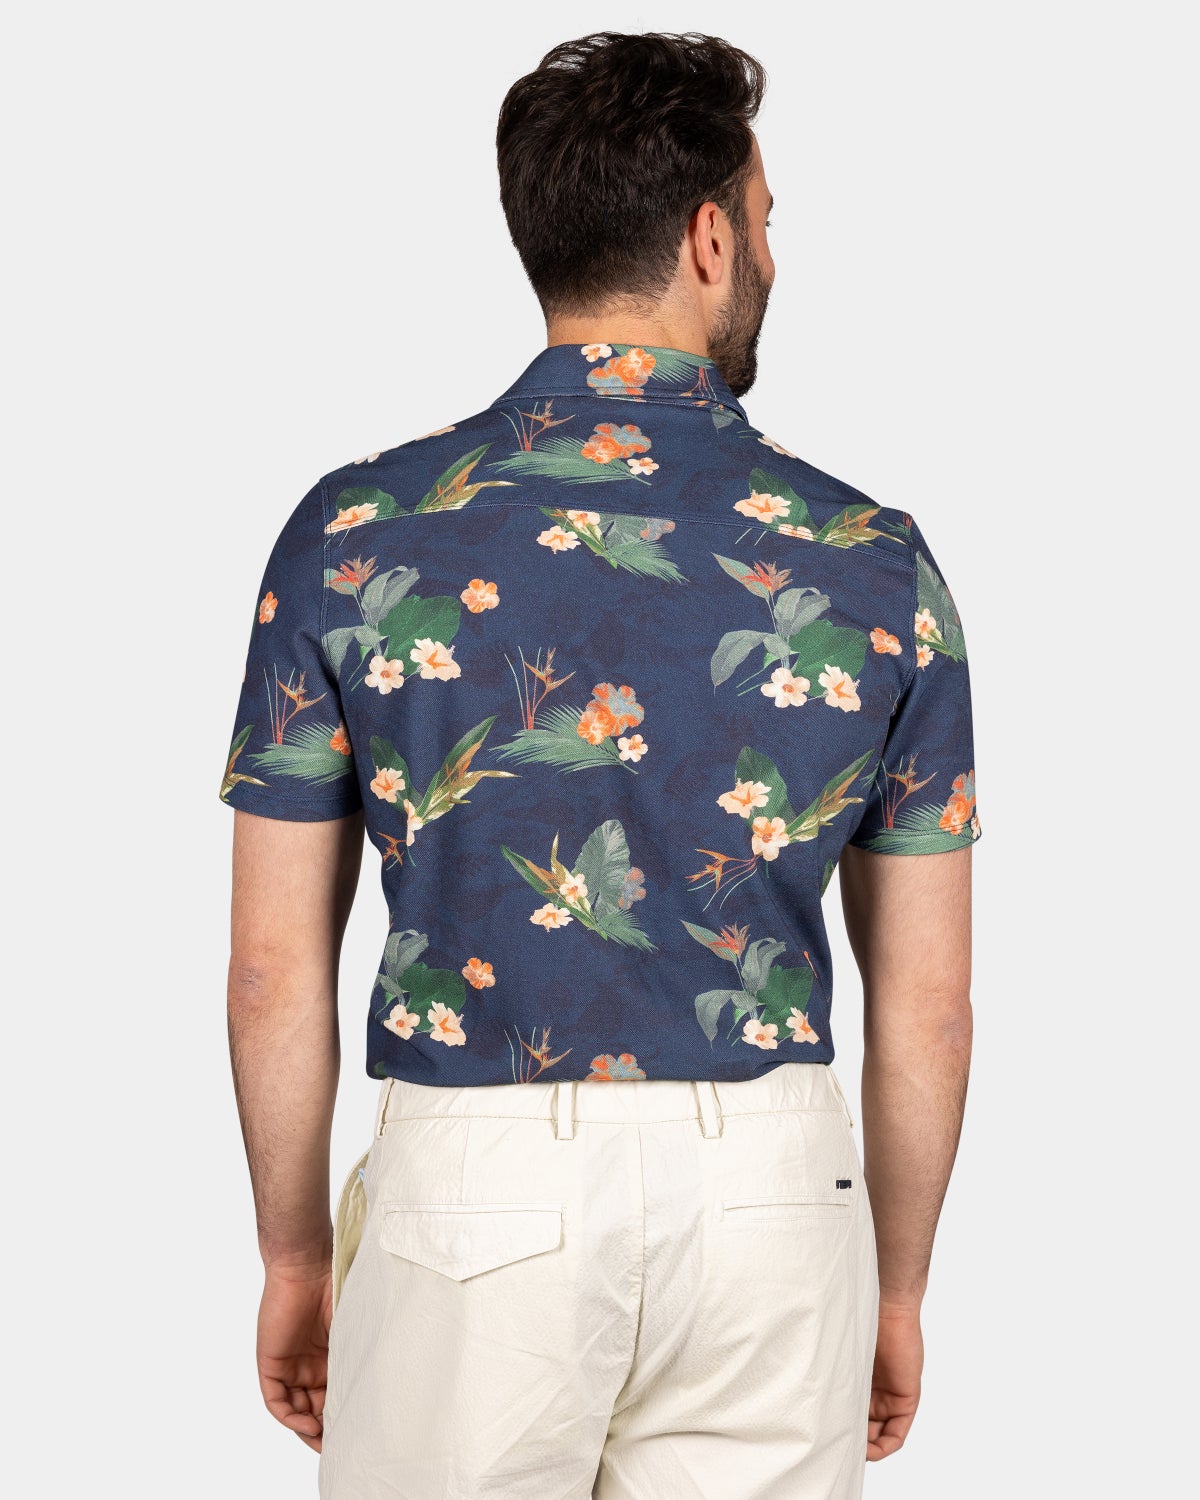 Dunkelblaues Hemd mit groﾧen Blumen - Ocean Navy